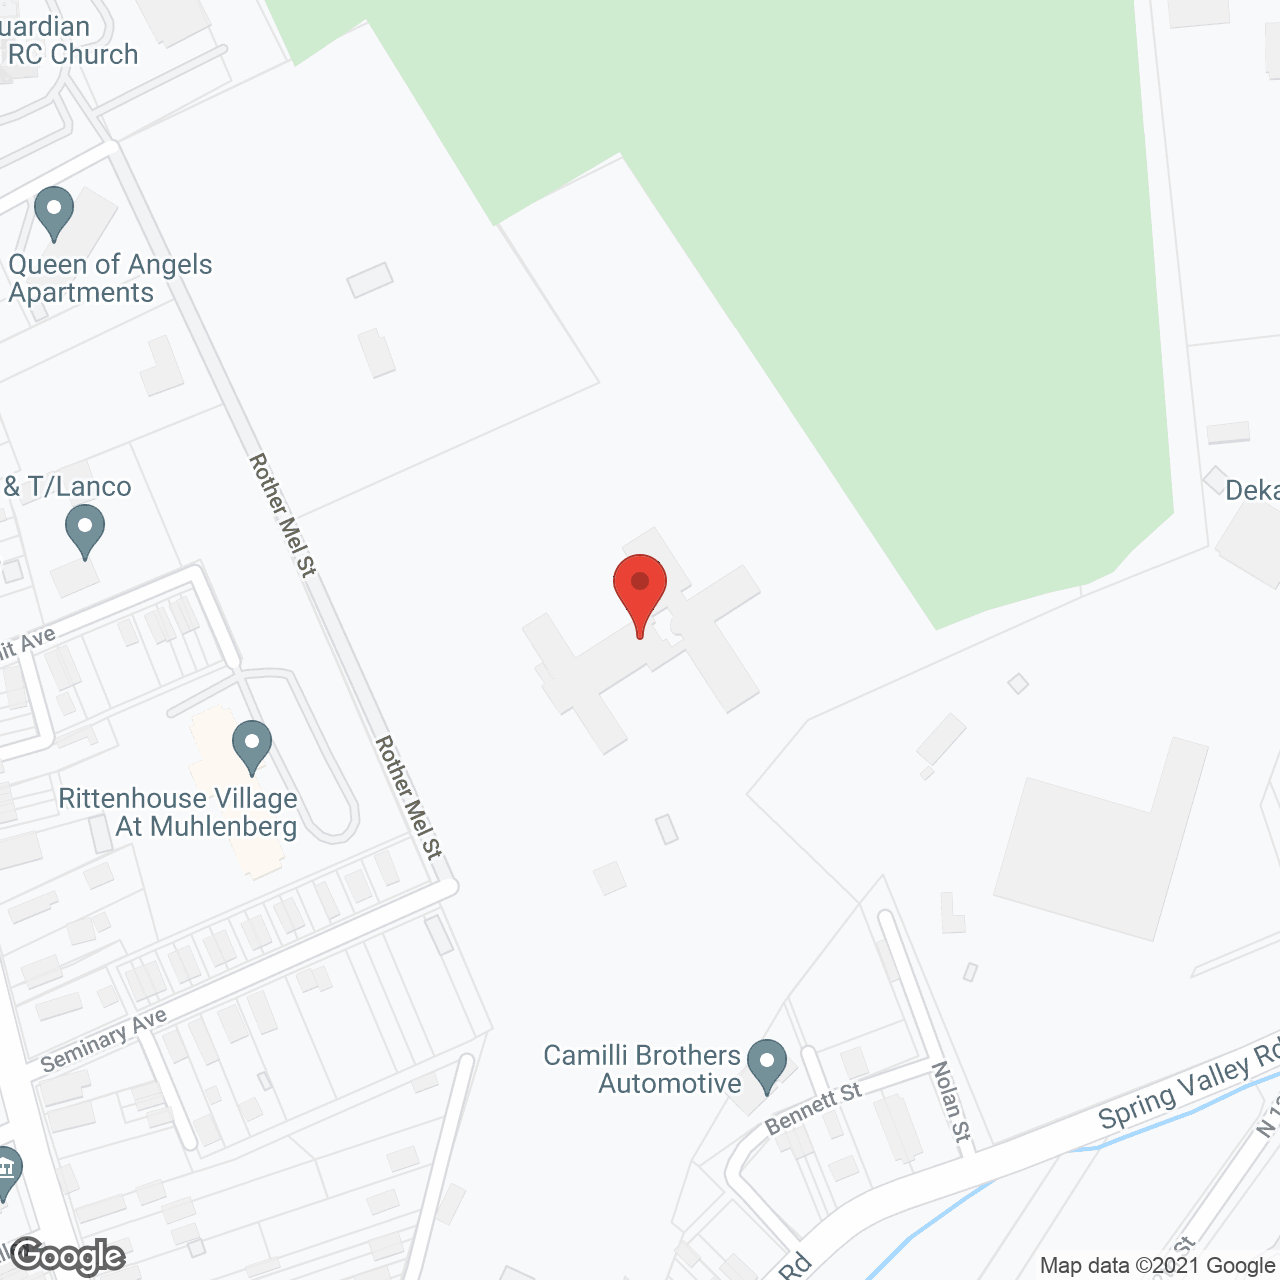 Sacred Heart Villa in google map